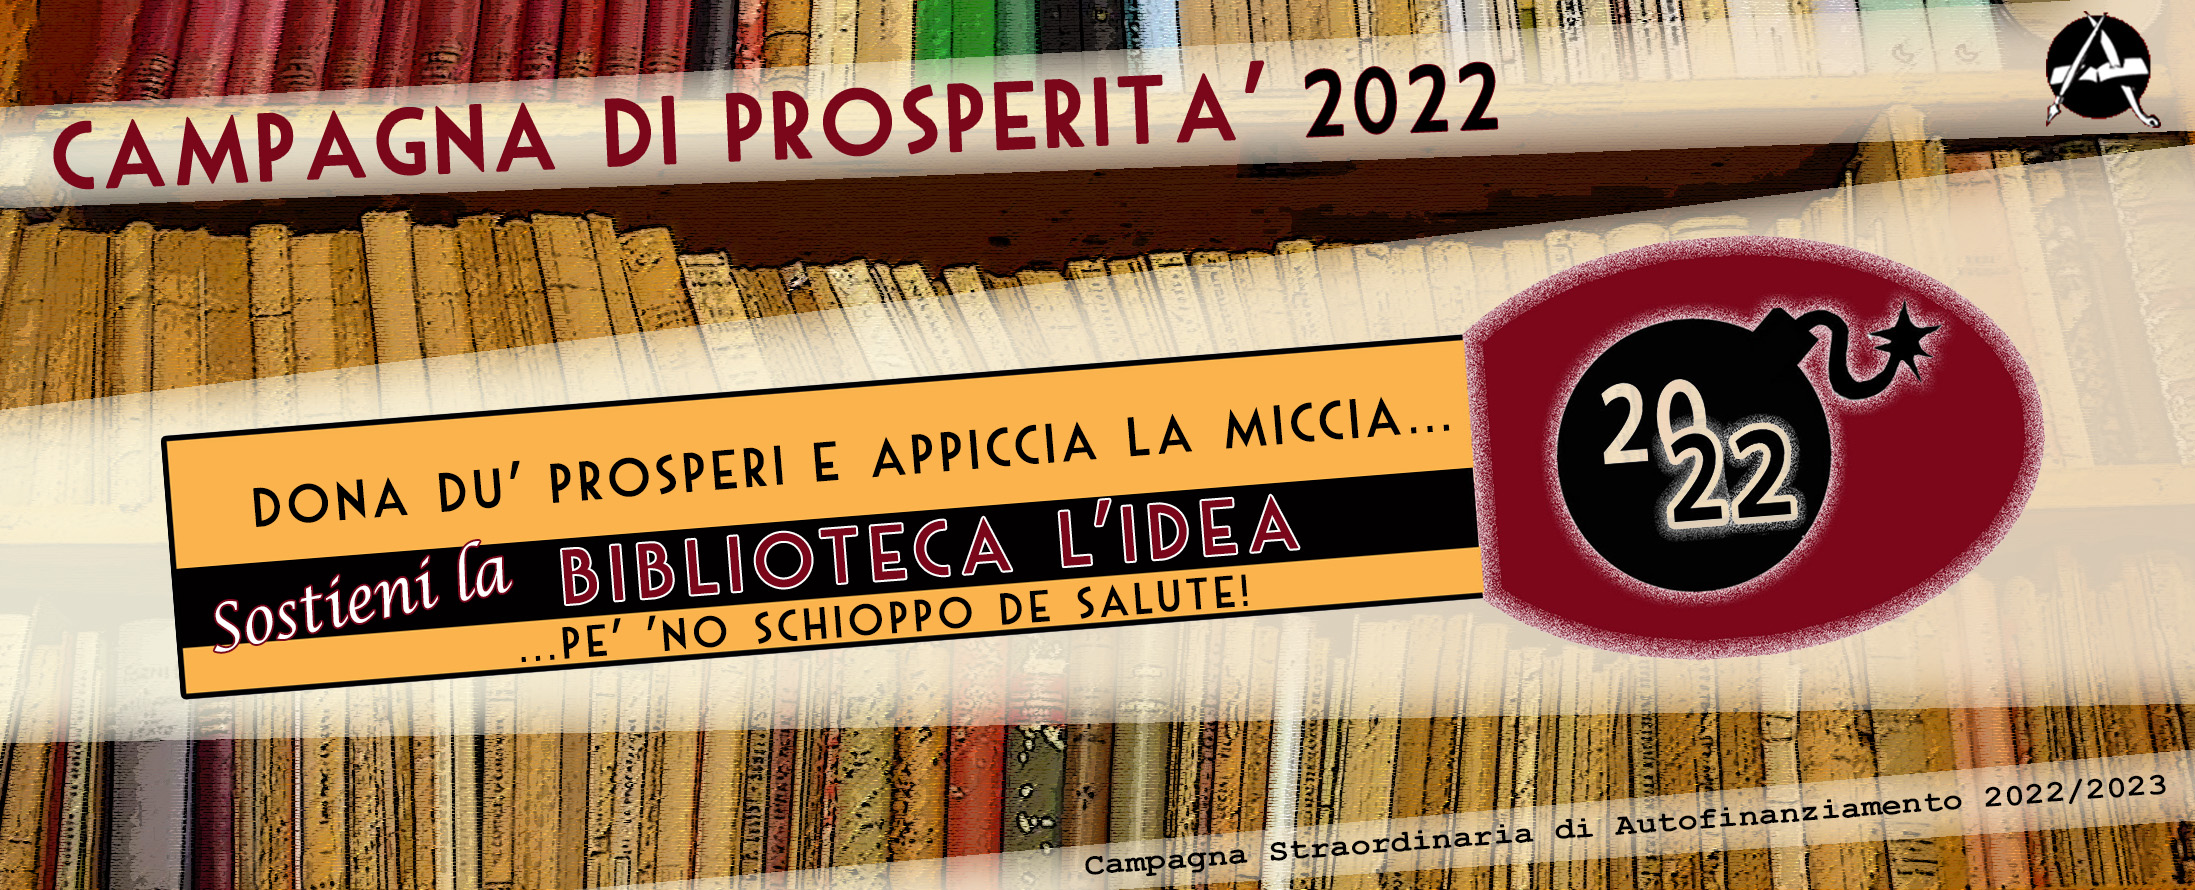 Campagna di Prosperità 2022